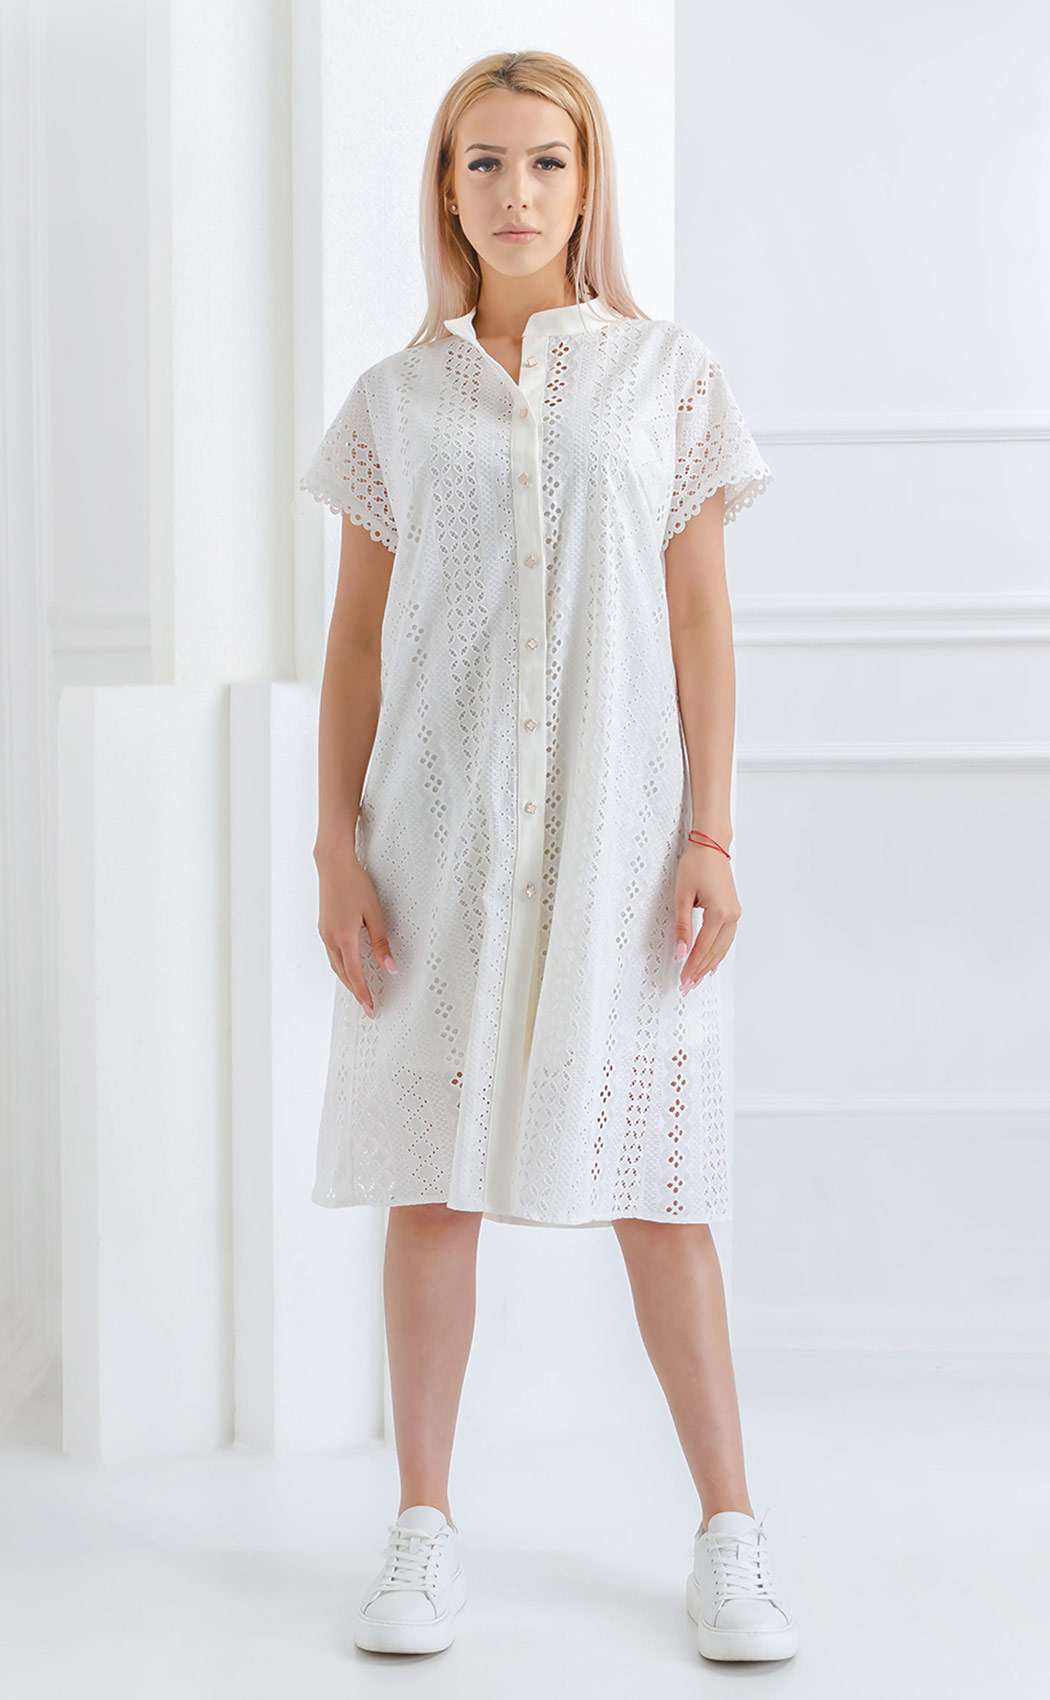 Casual elegant white dress⊶ summer dresses ᑕ❶ᑐ AROGANS